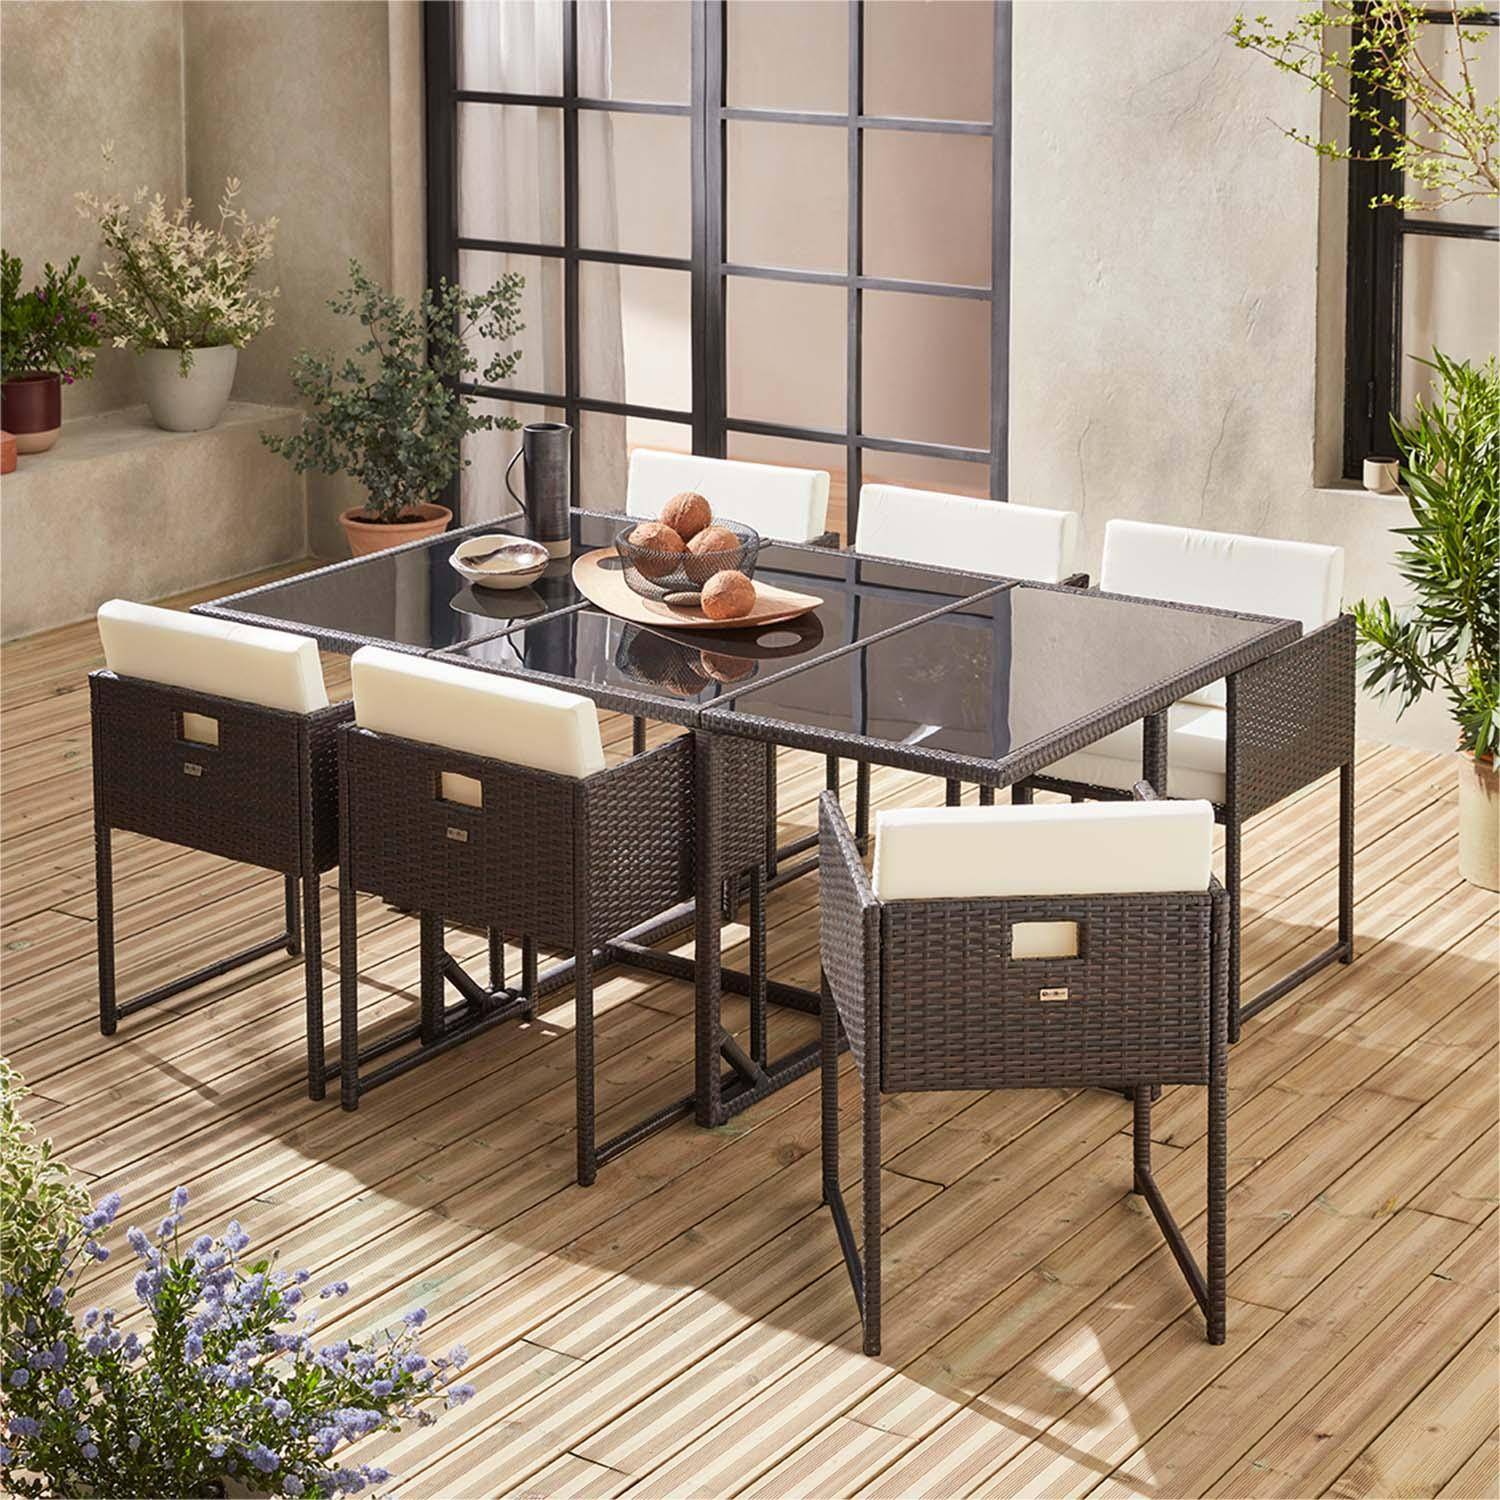 Table de jardin en résine 6 places – FIRENZE 6 – coloris marron, coussins blancs, table encastrable Photo2